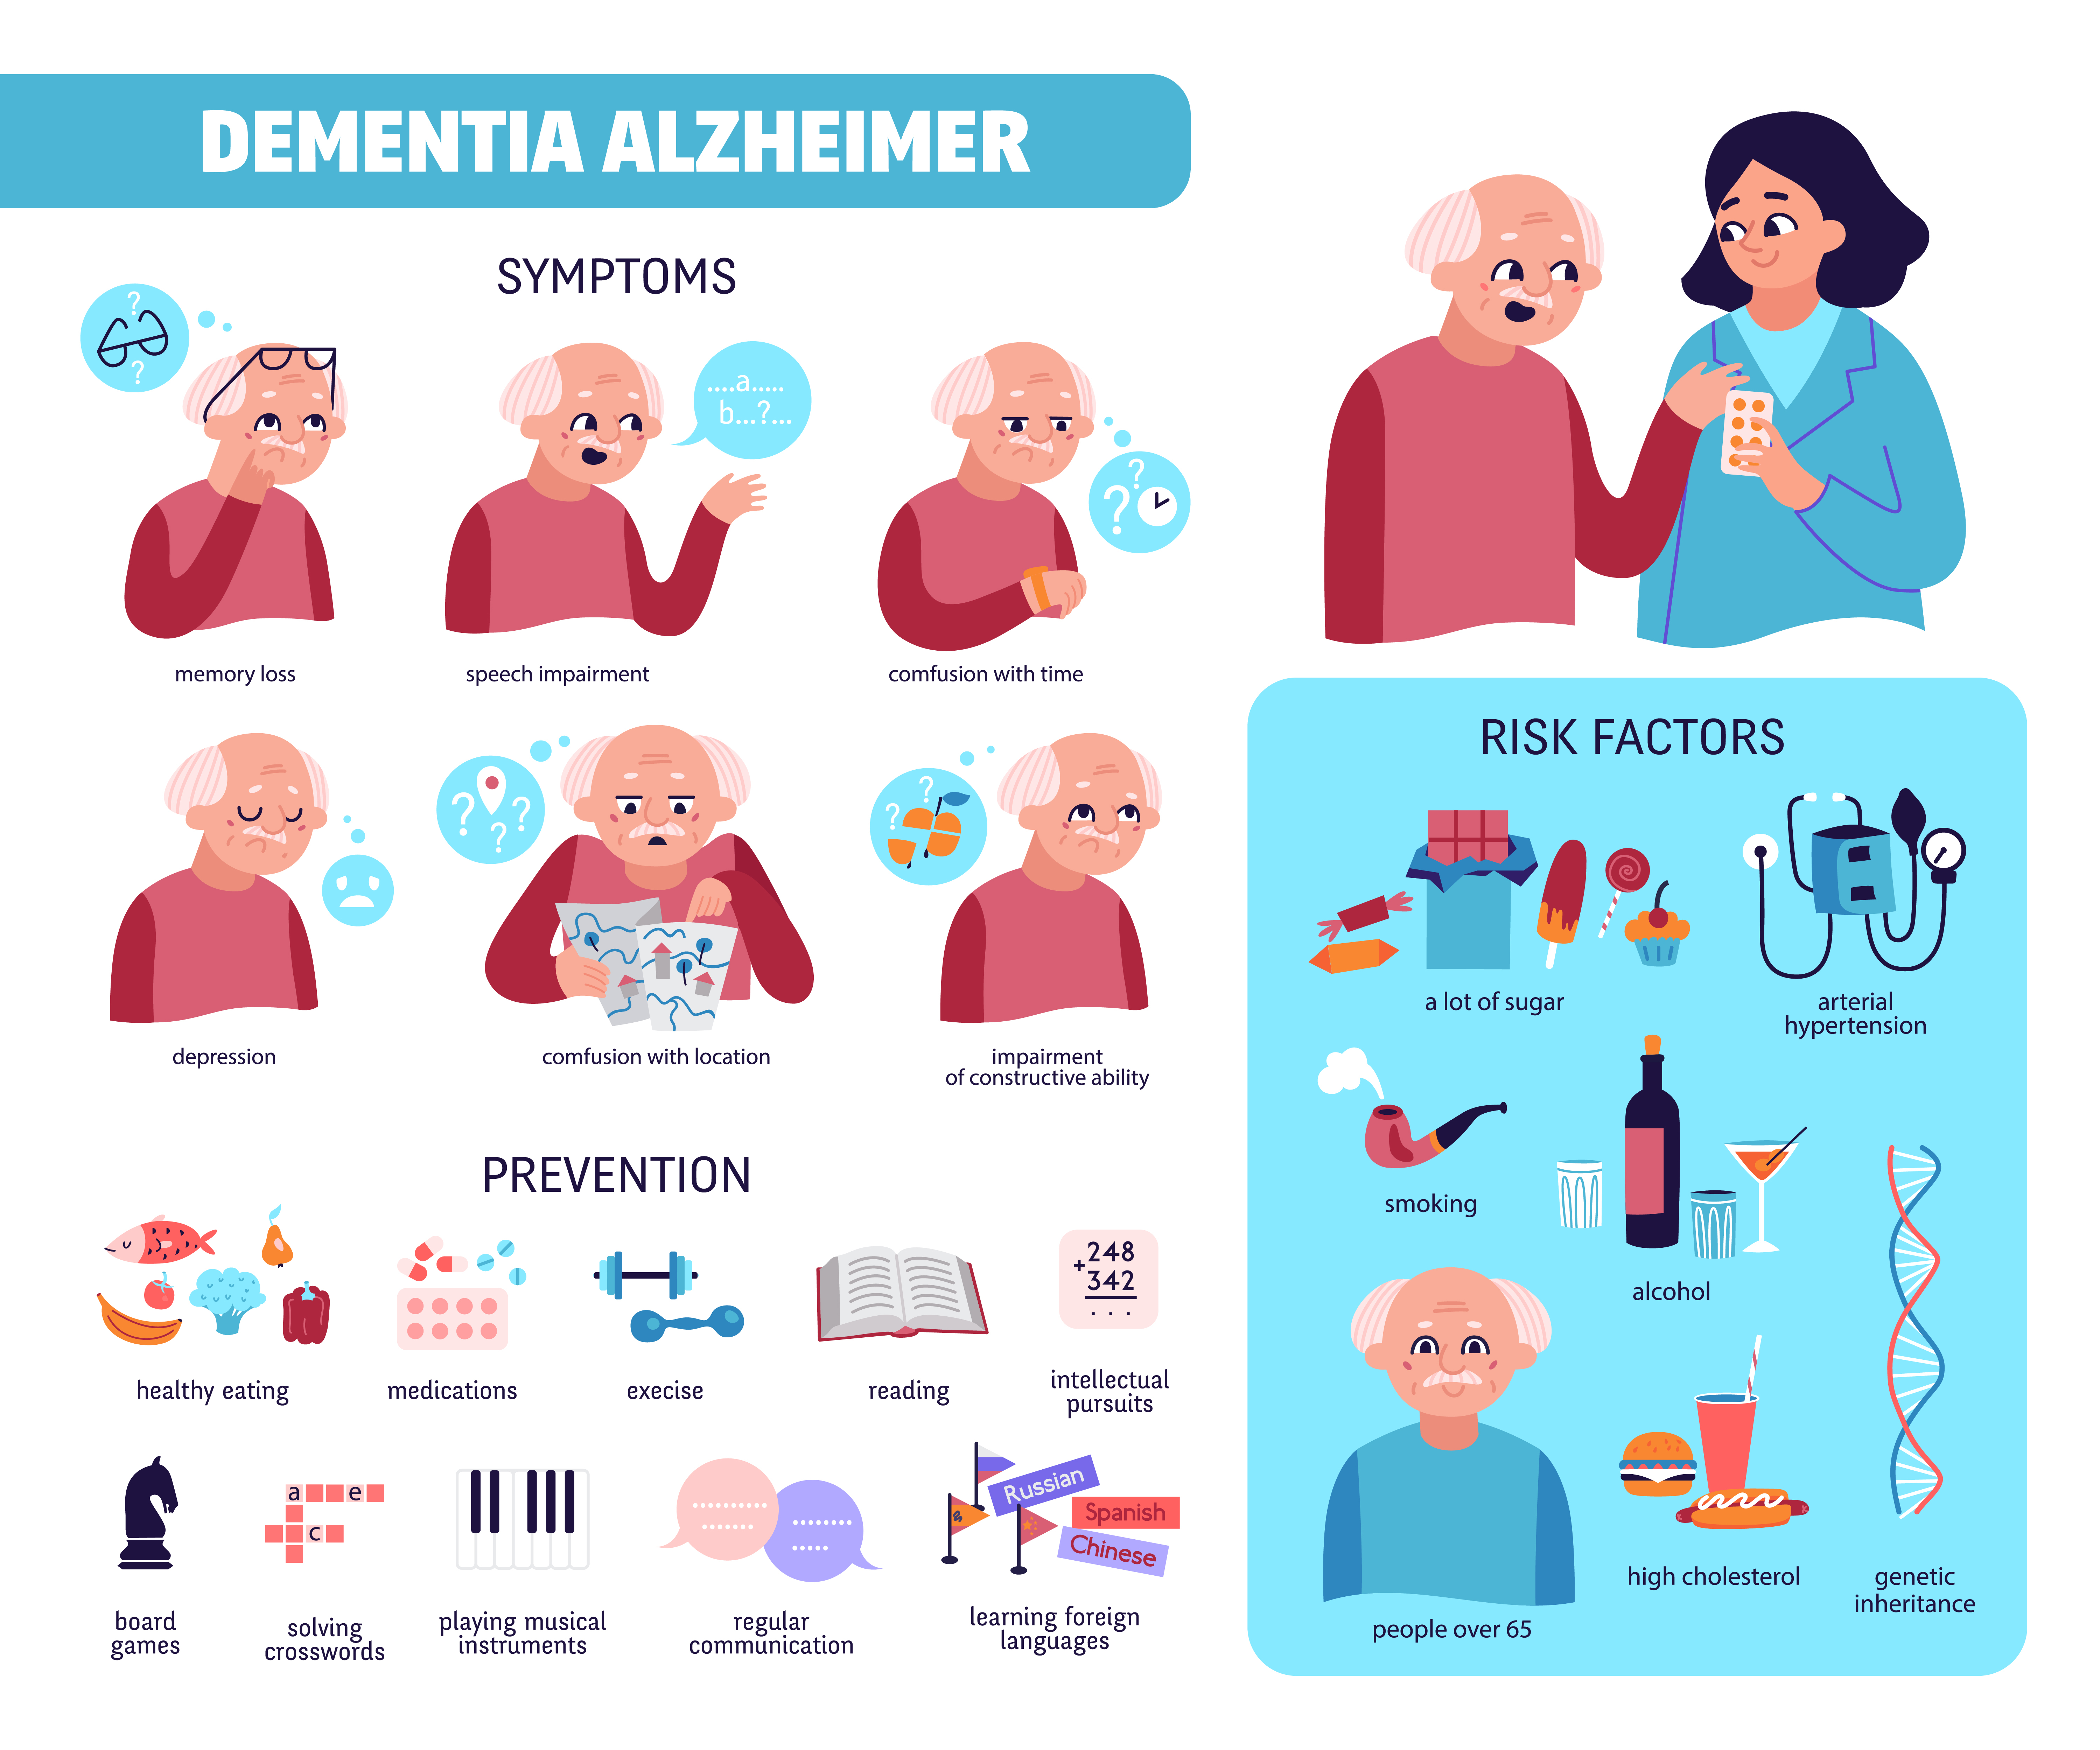 Dementia & Alzheimers - Risk Factors, Symptoms & Prevention